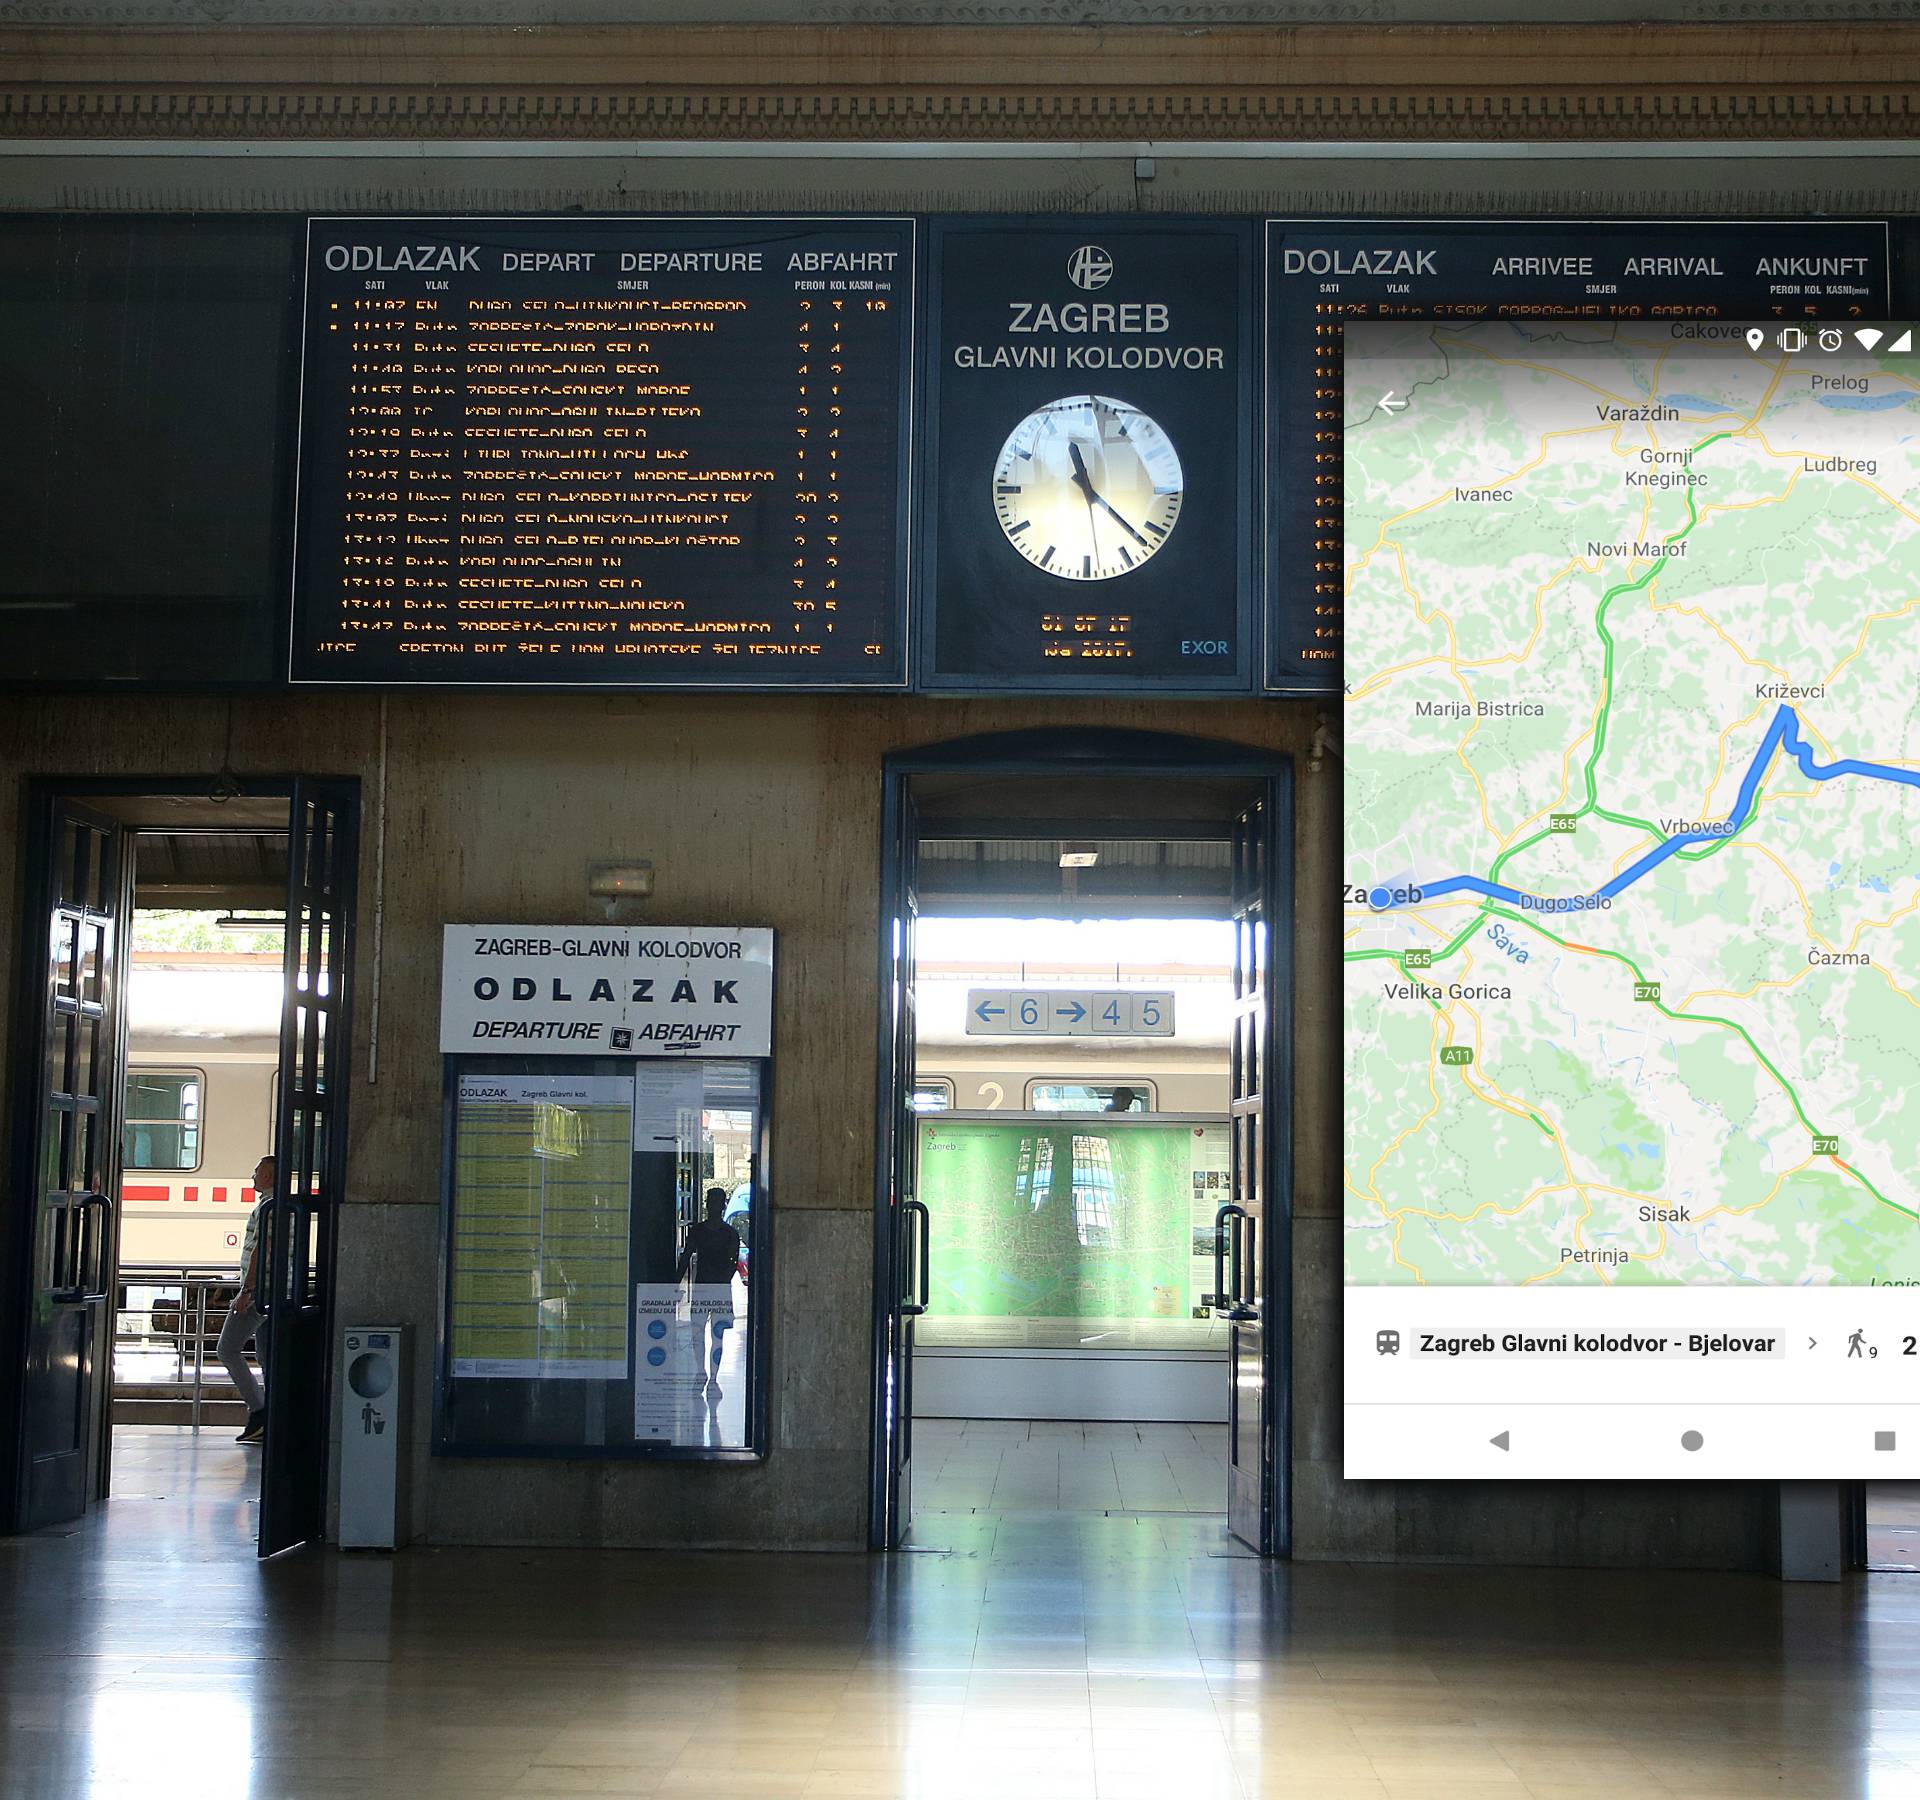 Preko Googlea i vlakom: HŽ-ov vozni red stigao u Google karte